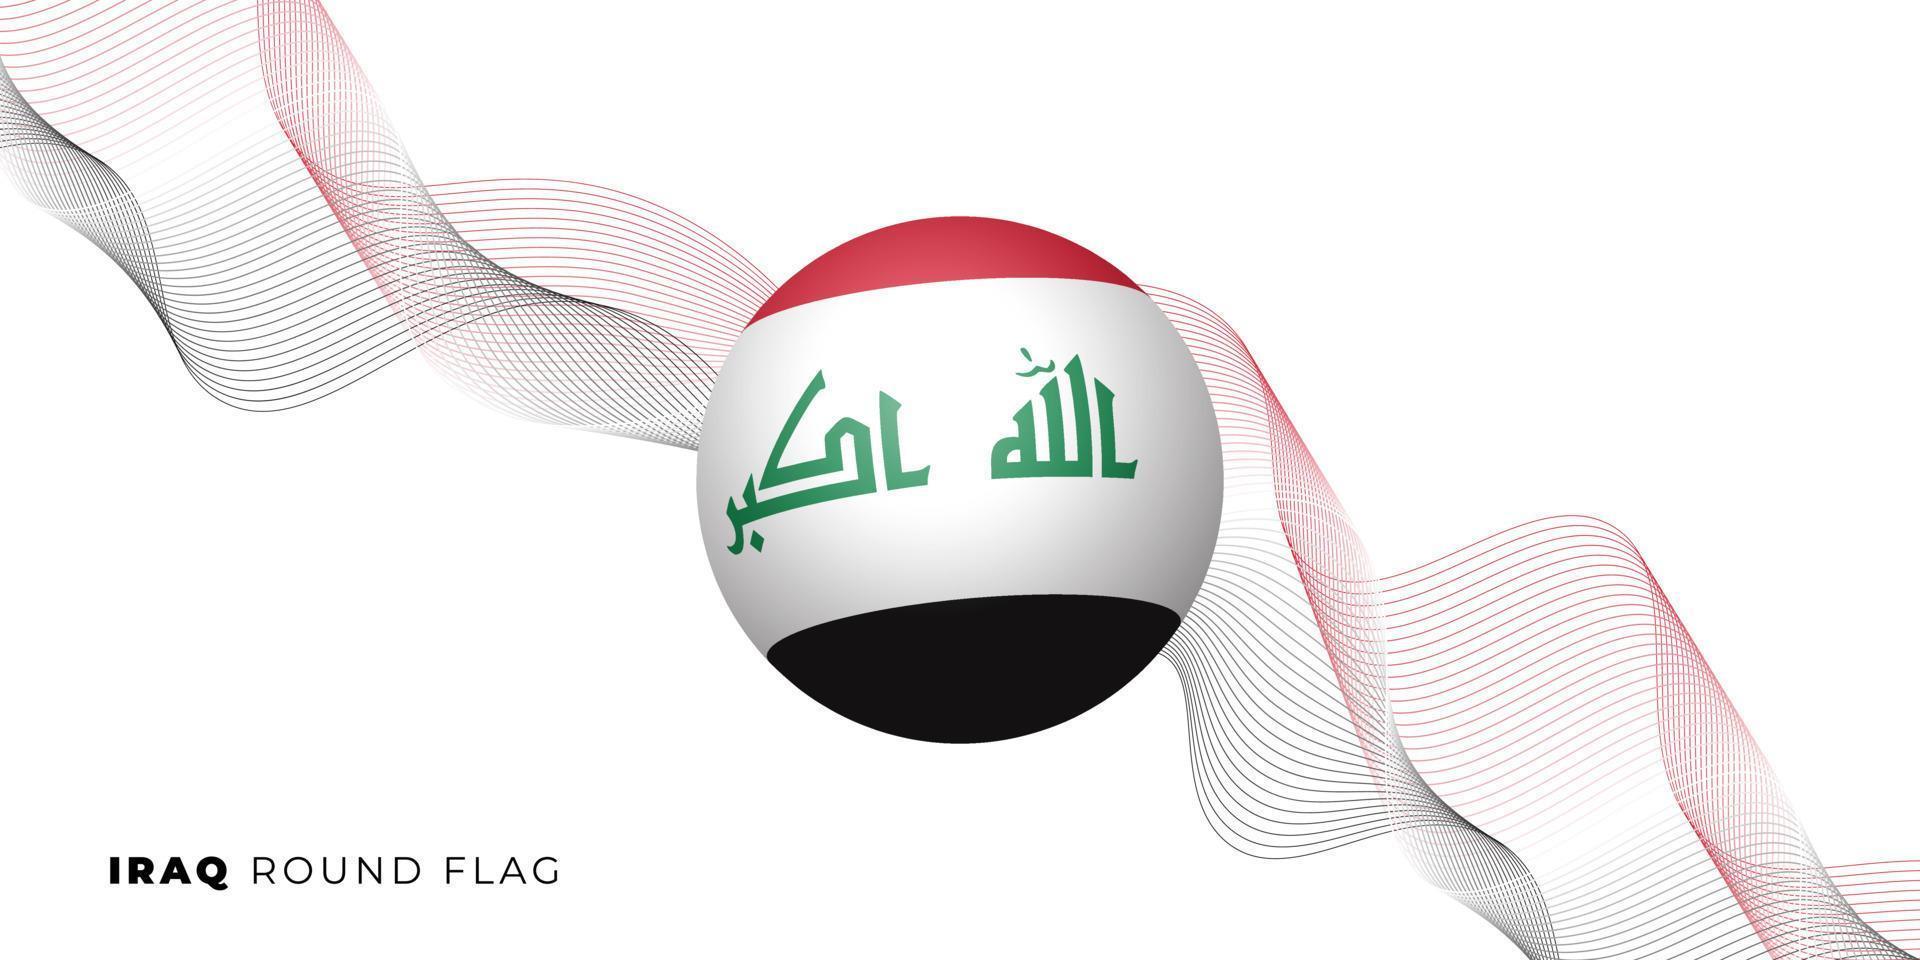 conception de vecteur de drapeau rond irak